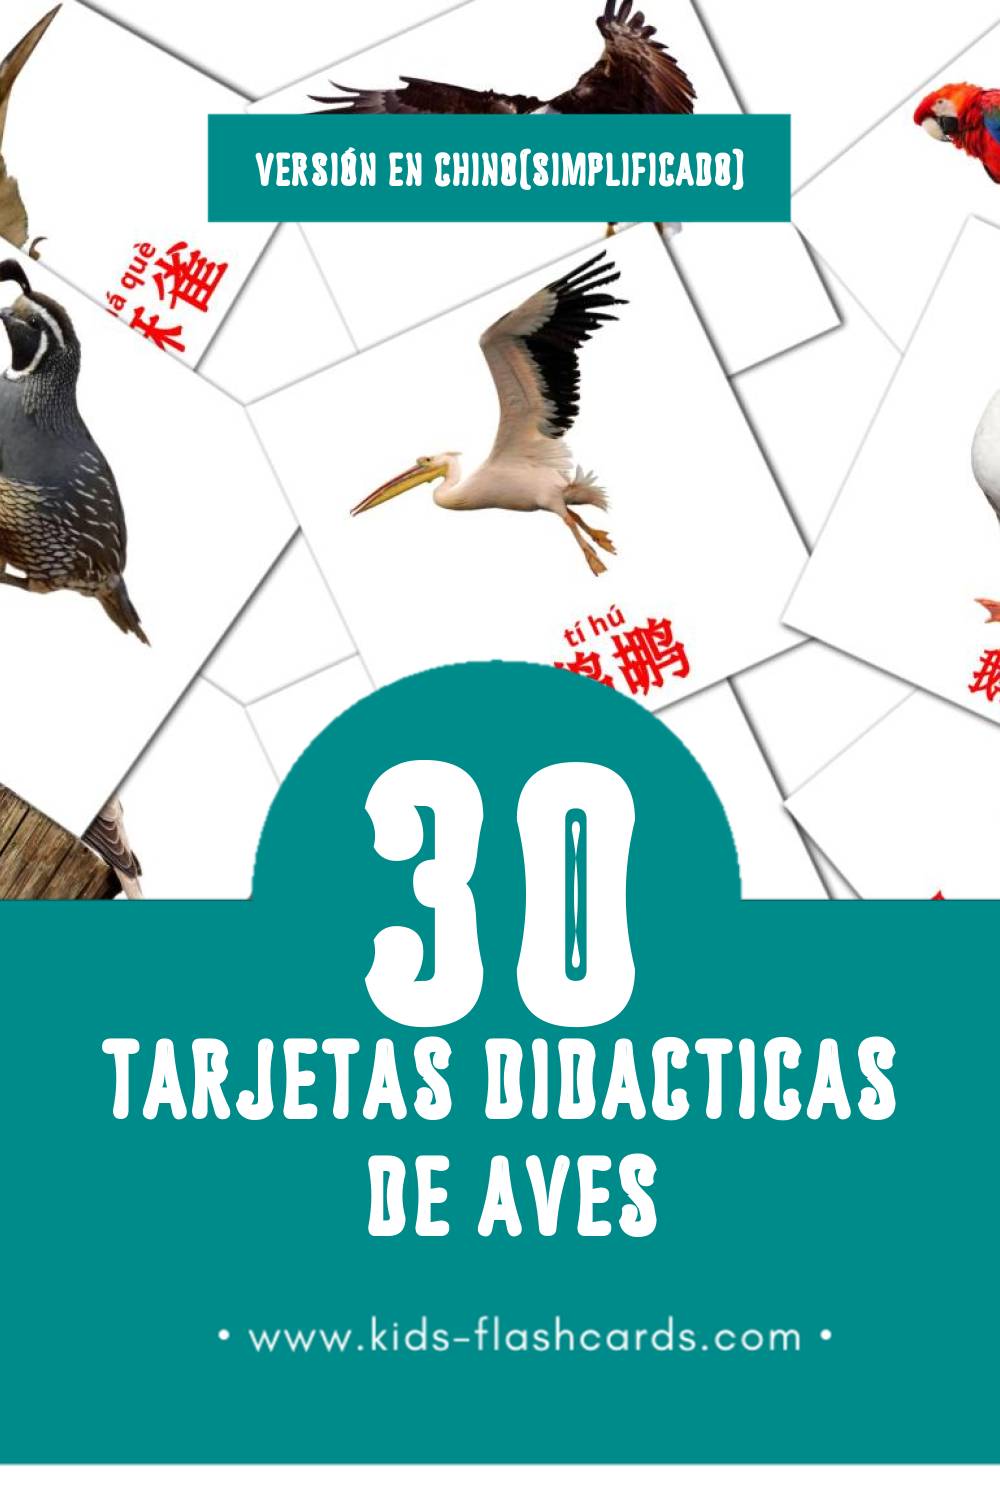 Tarjetas visuales de 鸟类 para niños pequeños (30 tarjetas en Chino(simplificado))